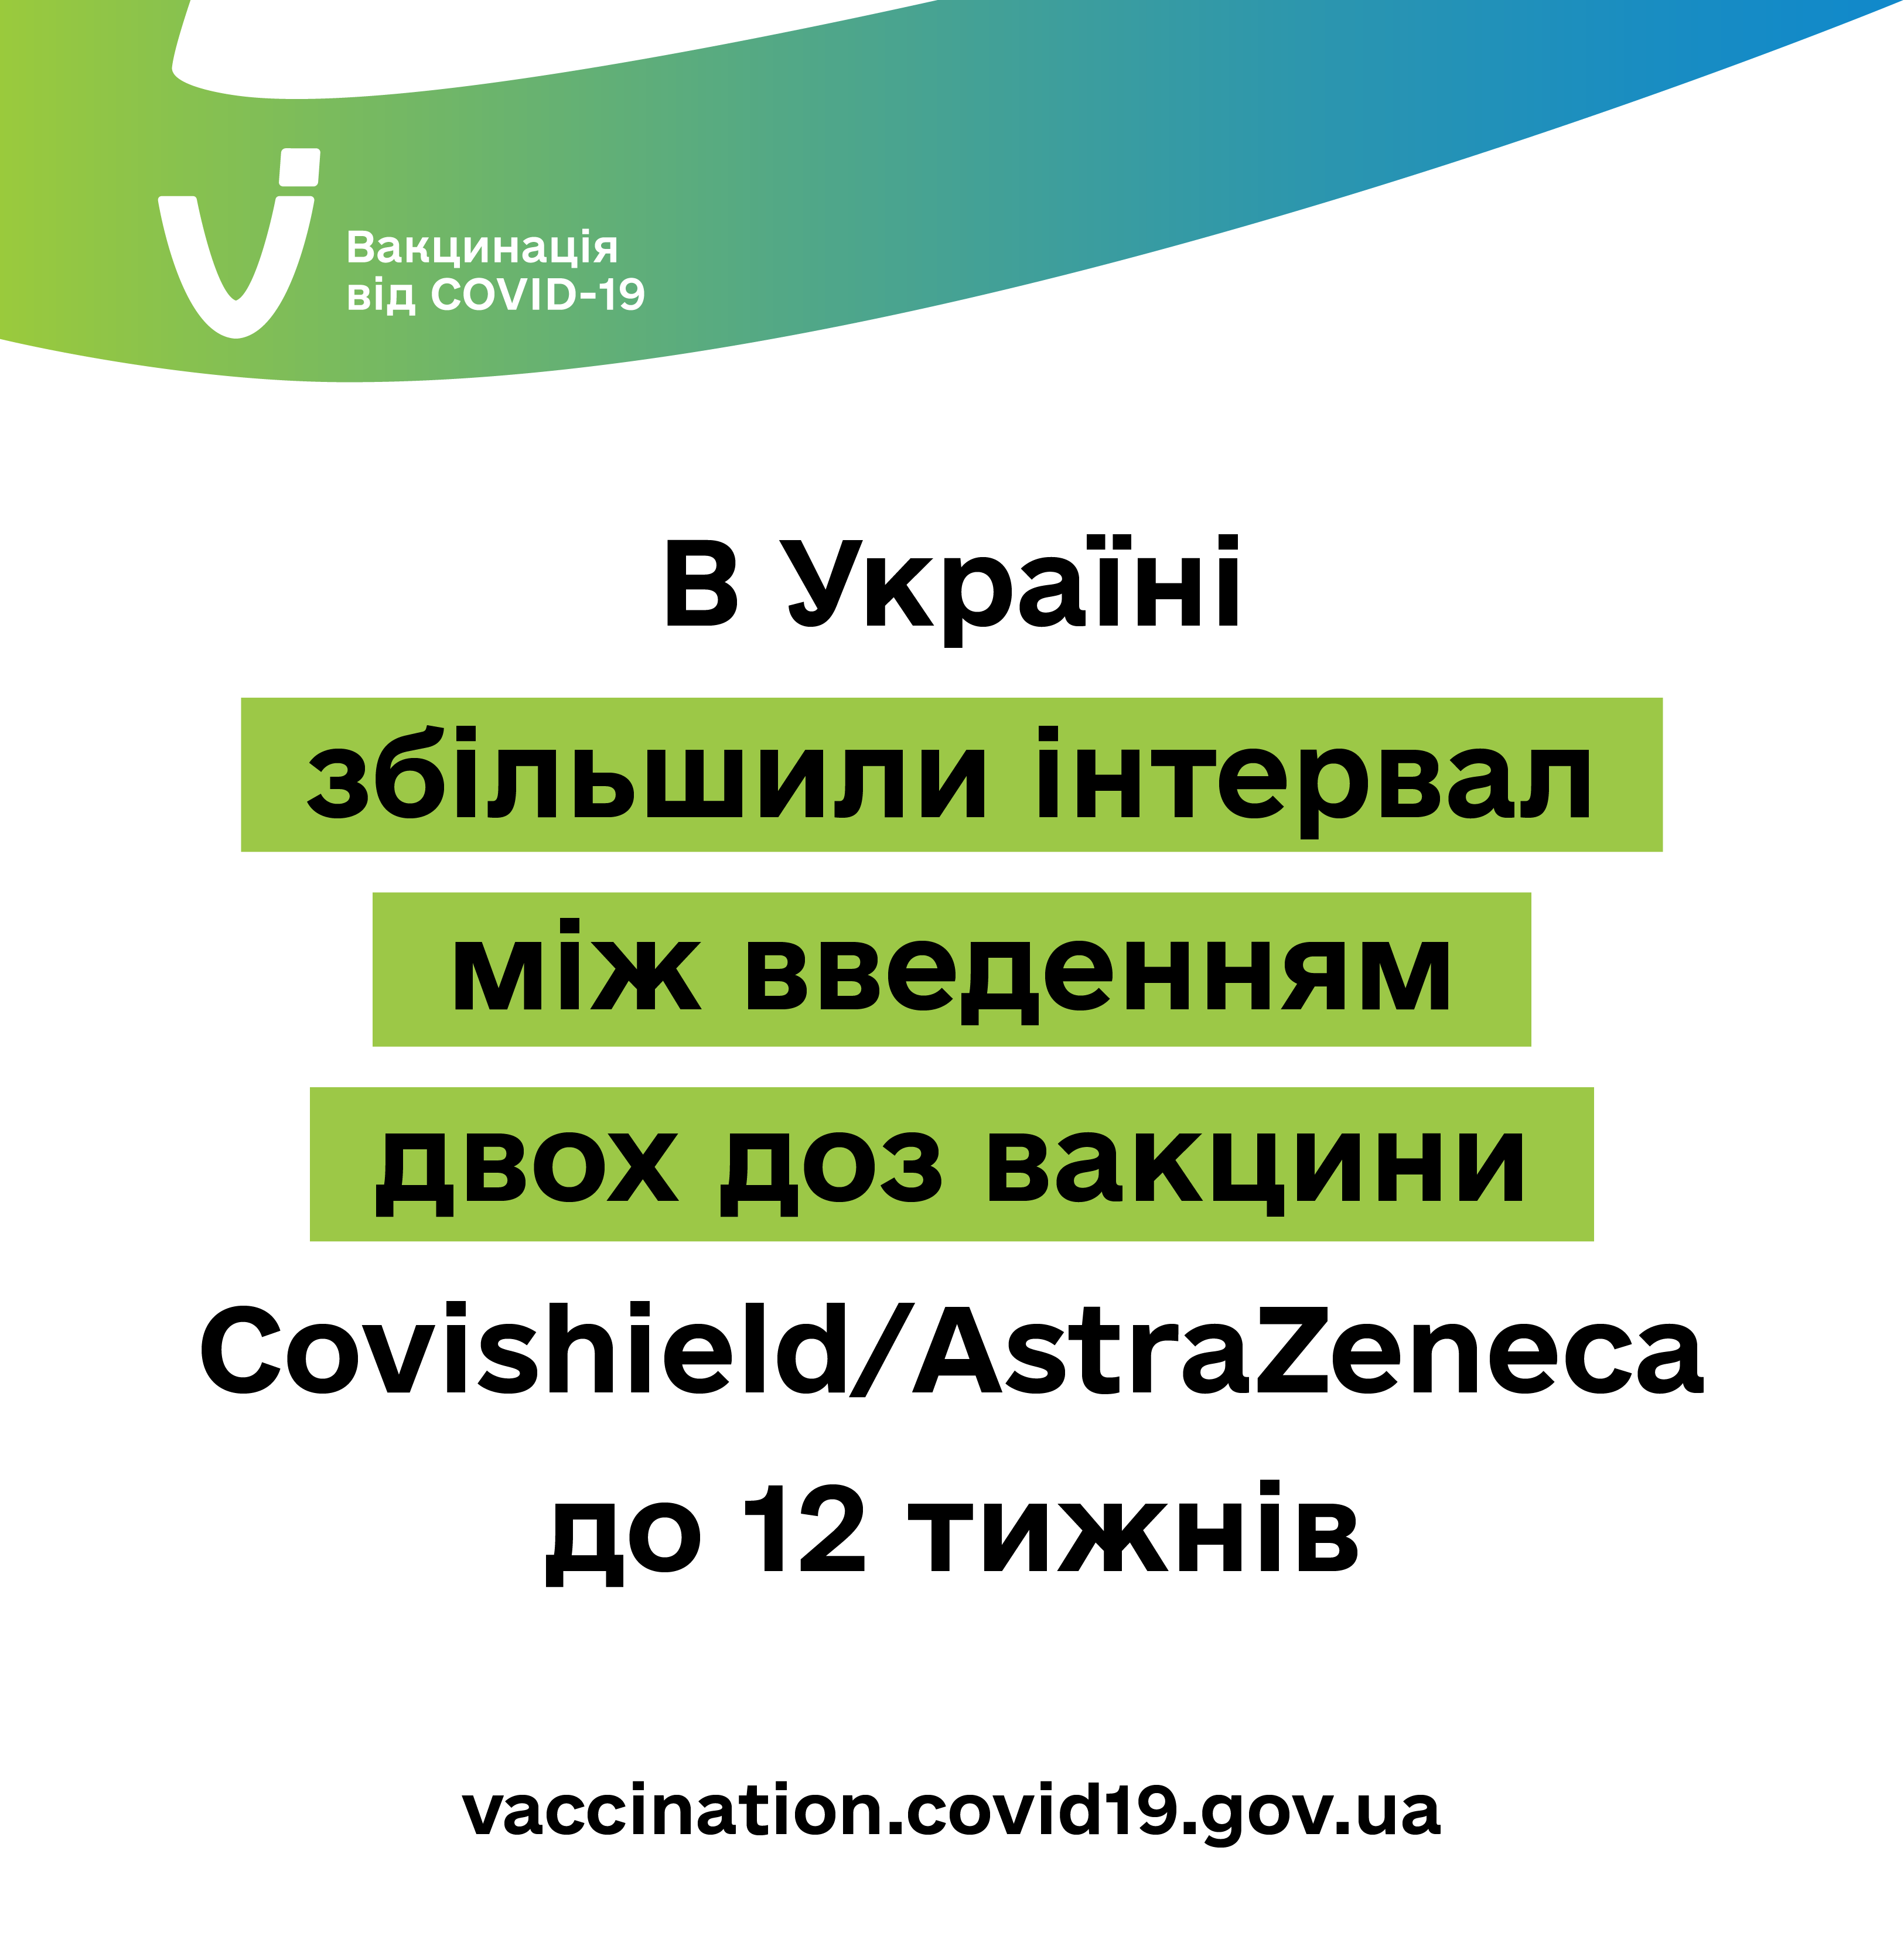 В Україні інтервал між введенням двох доз вакцини Covishield/AstraZeneca збільшили до 12 тижнів